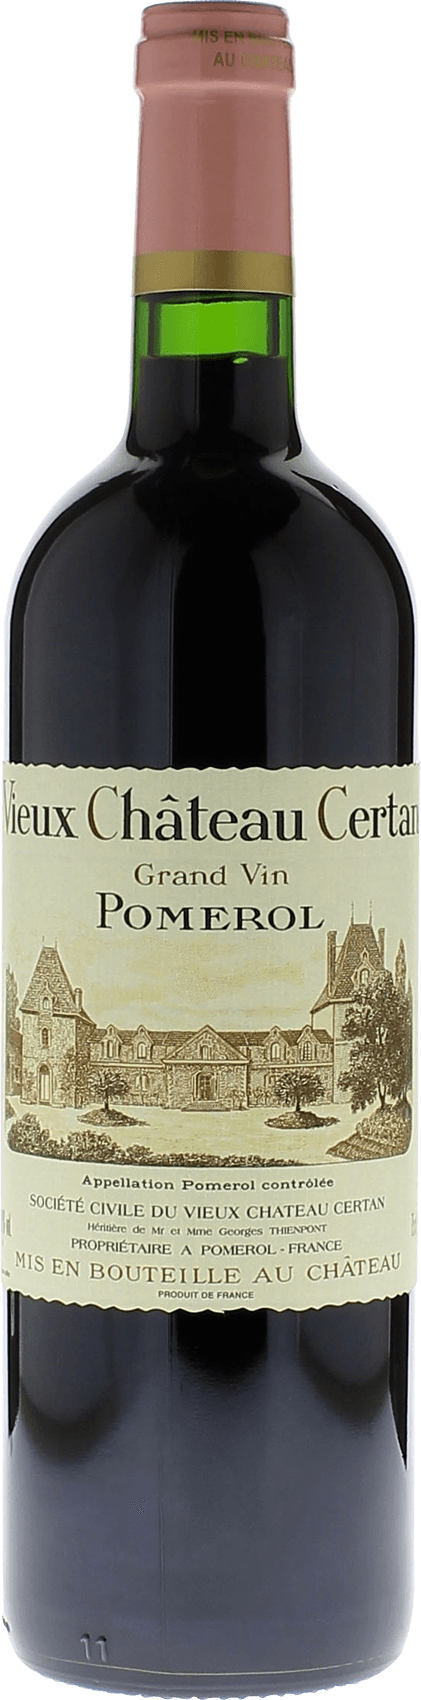 Vieux chteau  certan 2004  Pomerol, Bordeaux rouge